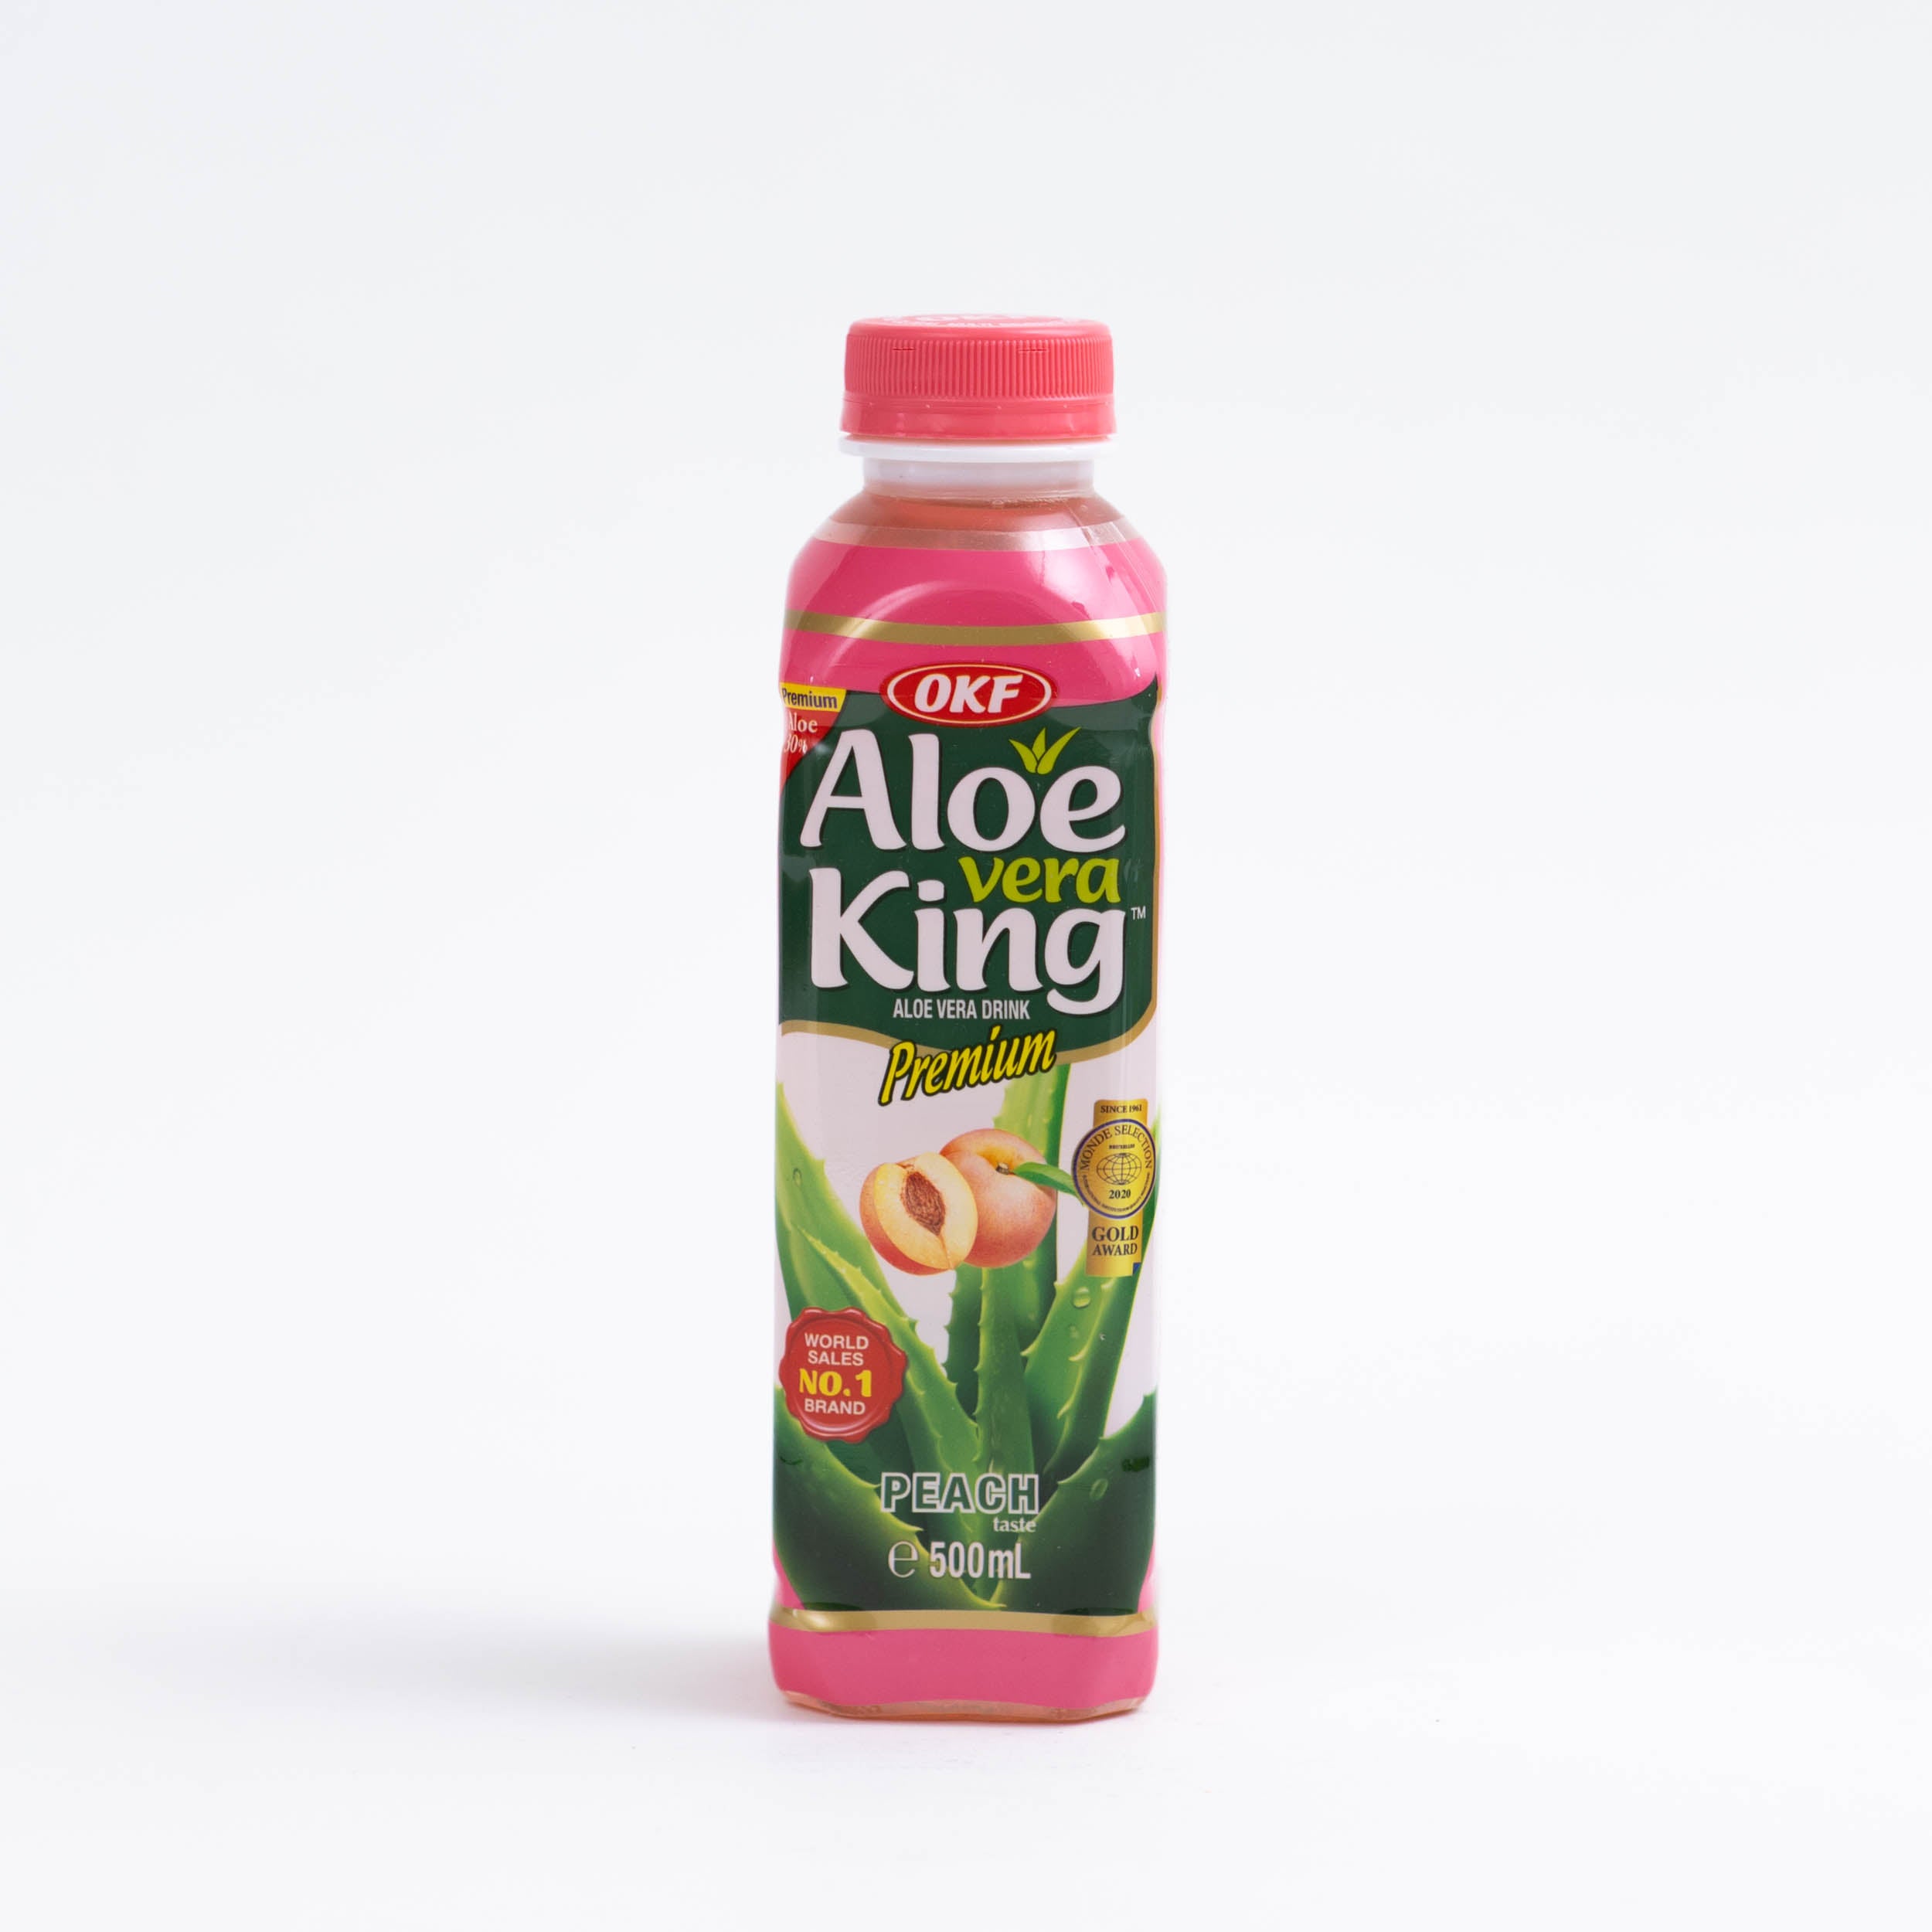 dinese.de aloe vera king asia shop onlineshop online asiatische getränke drink pfirsich peach 